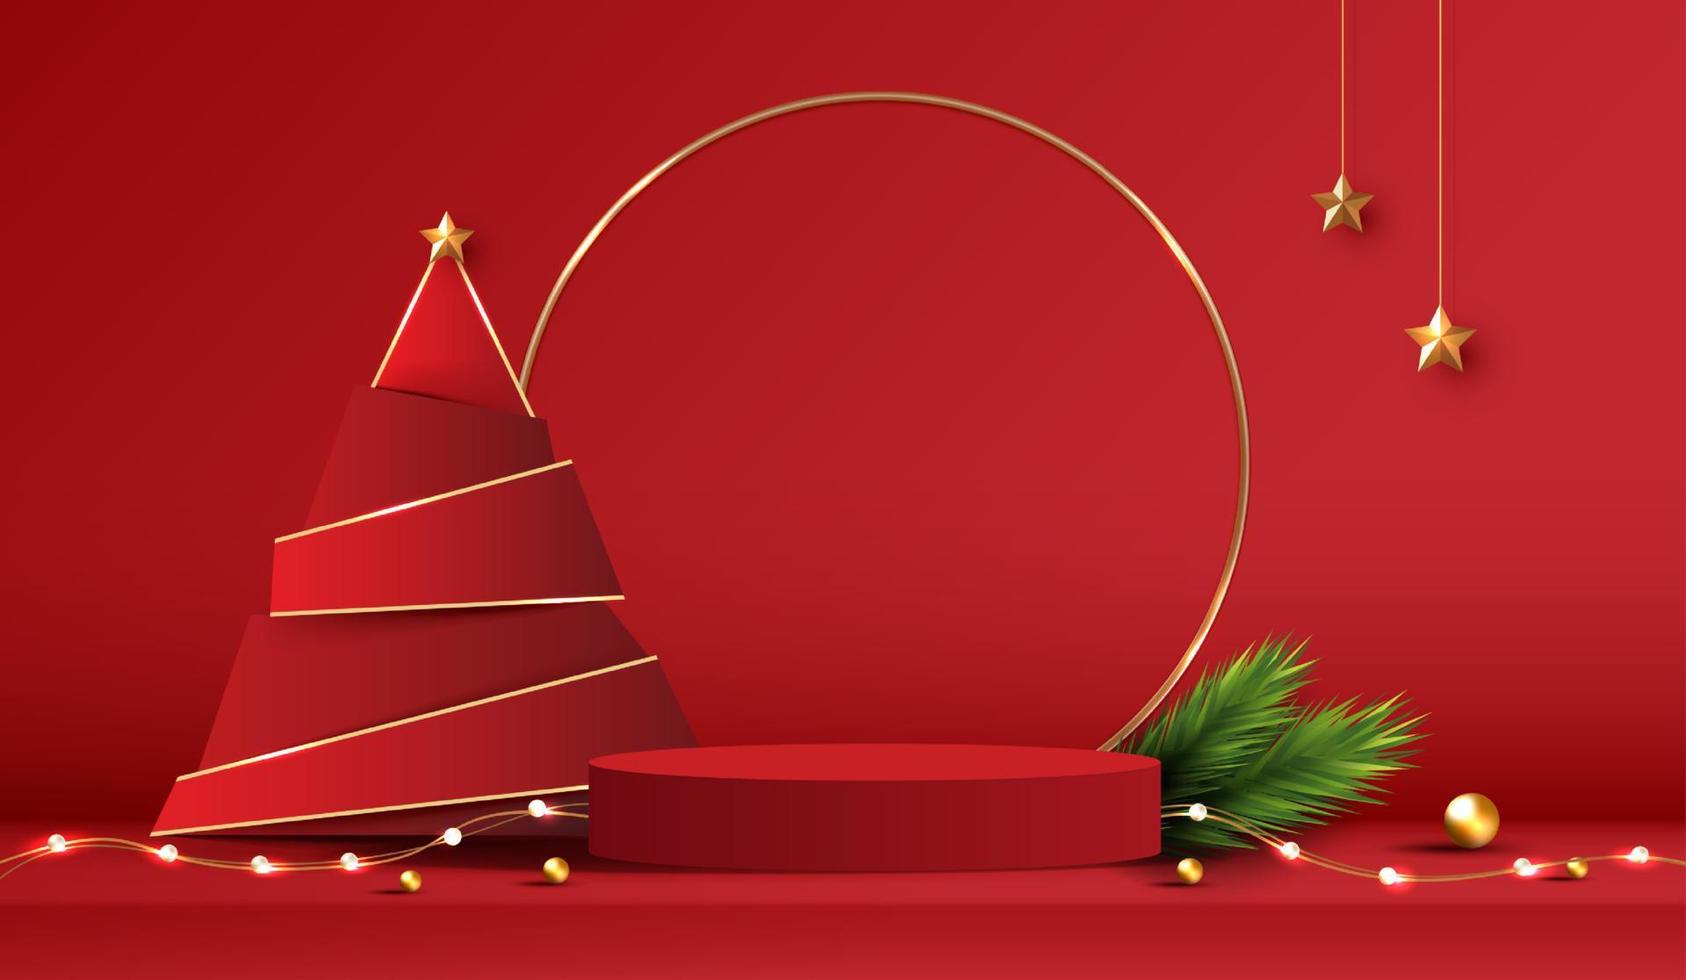 podio forma per mostrare cosmetico Prodotto Schermo per Natale giorno o nuovo anni. In piedi Prodotto vetrina su rosso sfondo con albero Natale. vettore design.